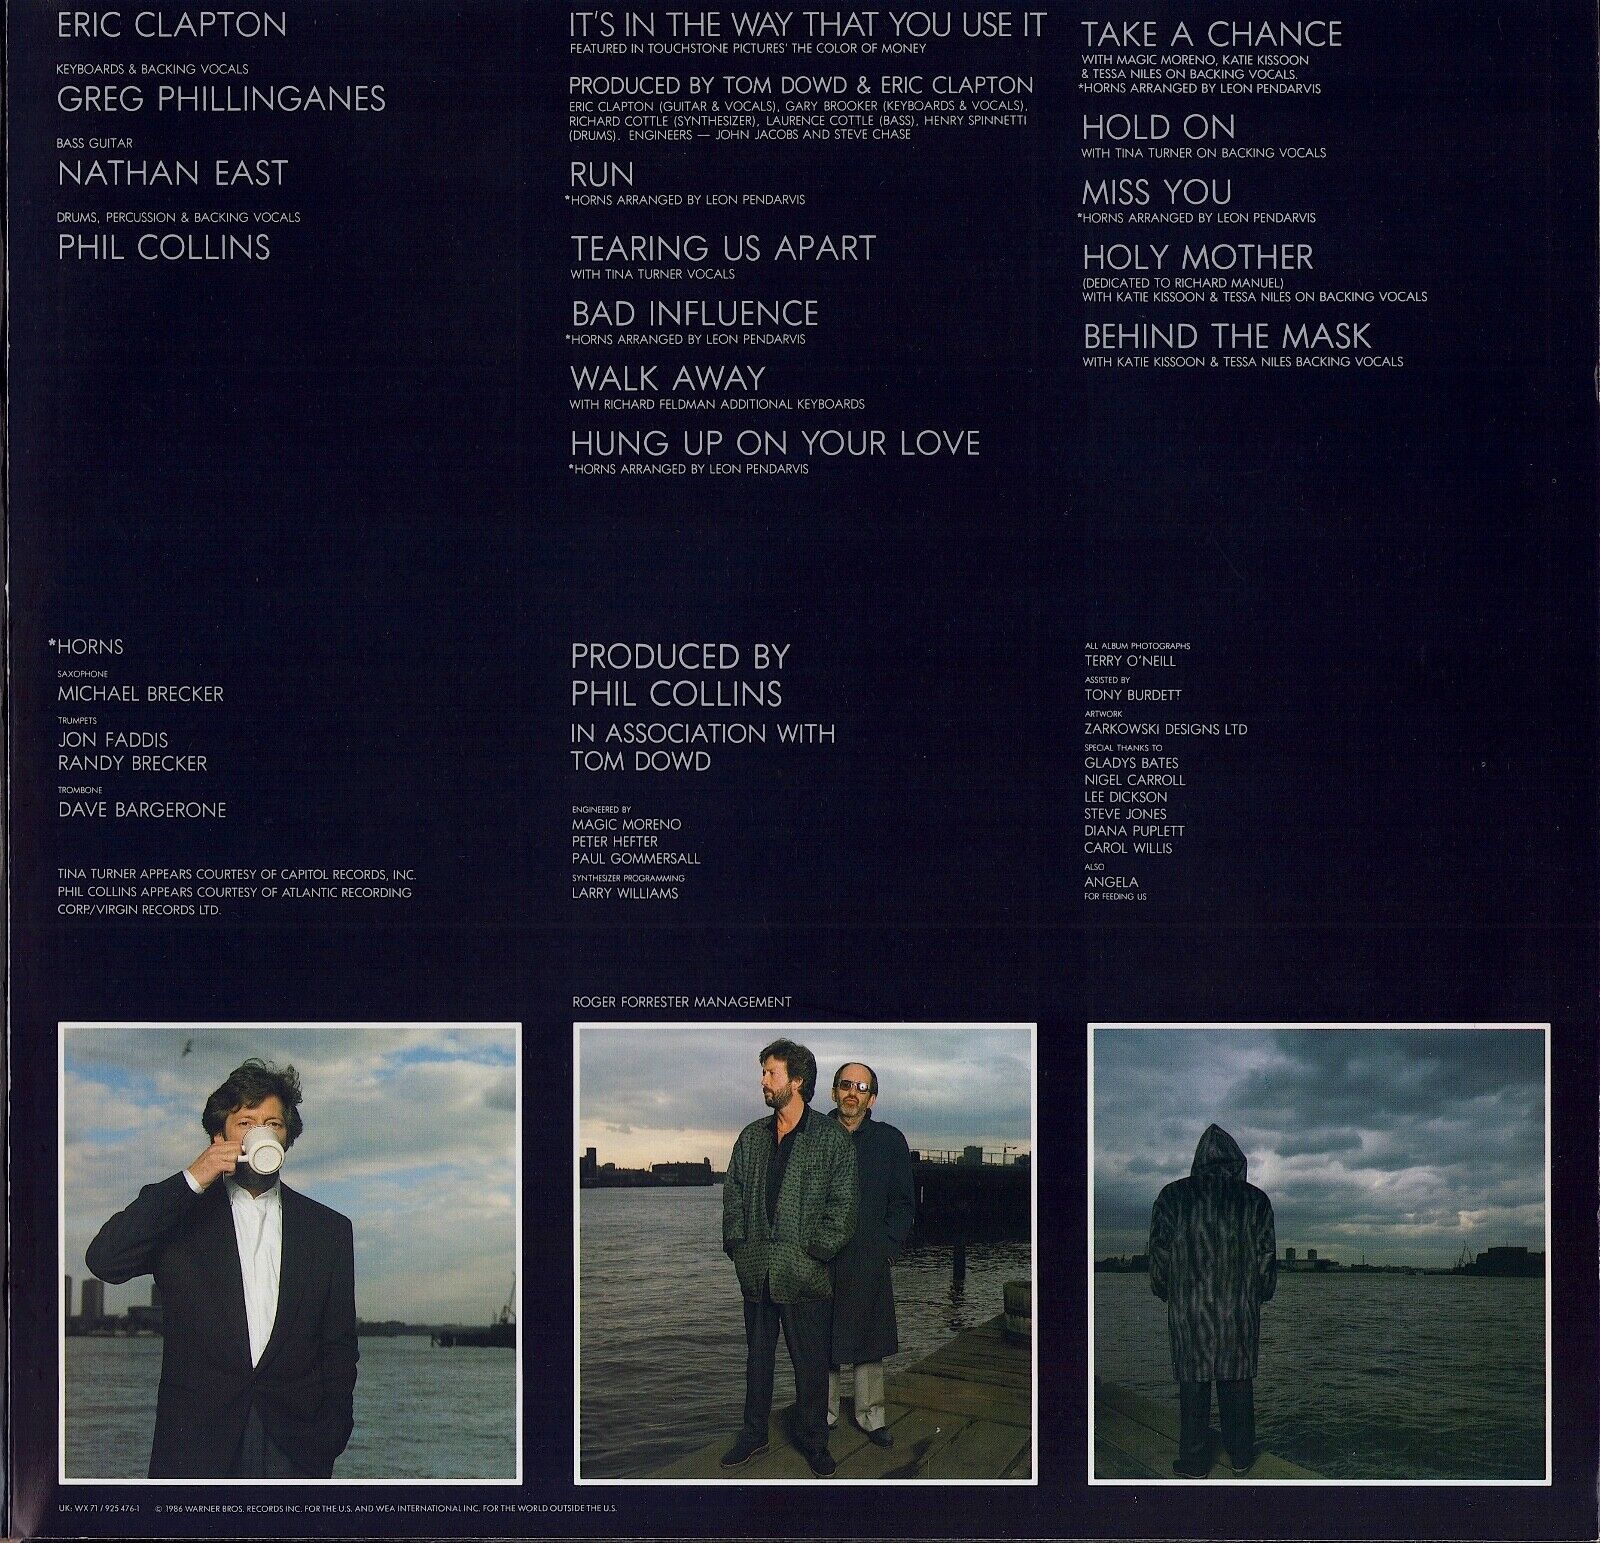 Eric Clapton - August Vinyl LP